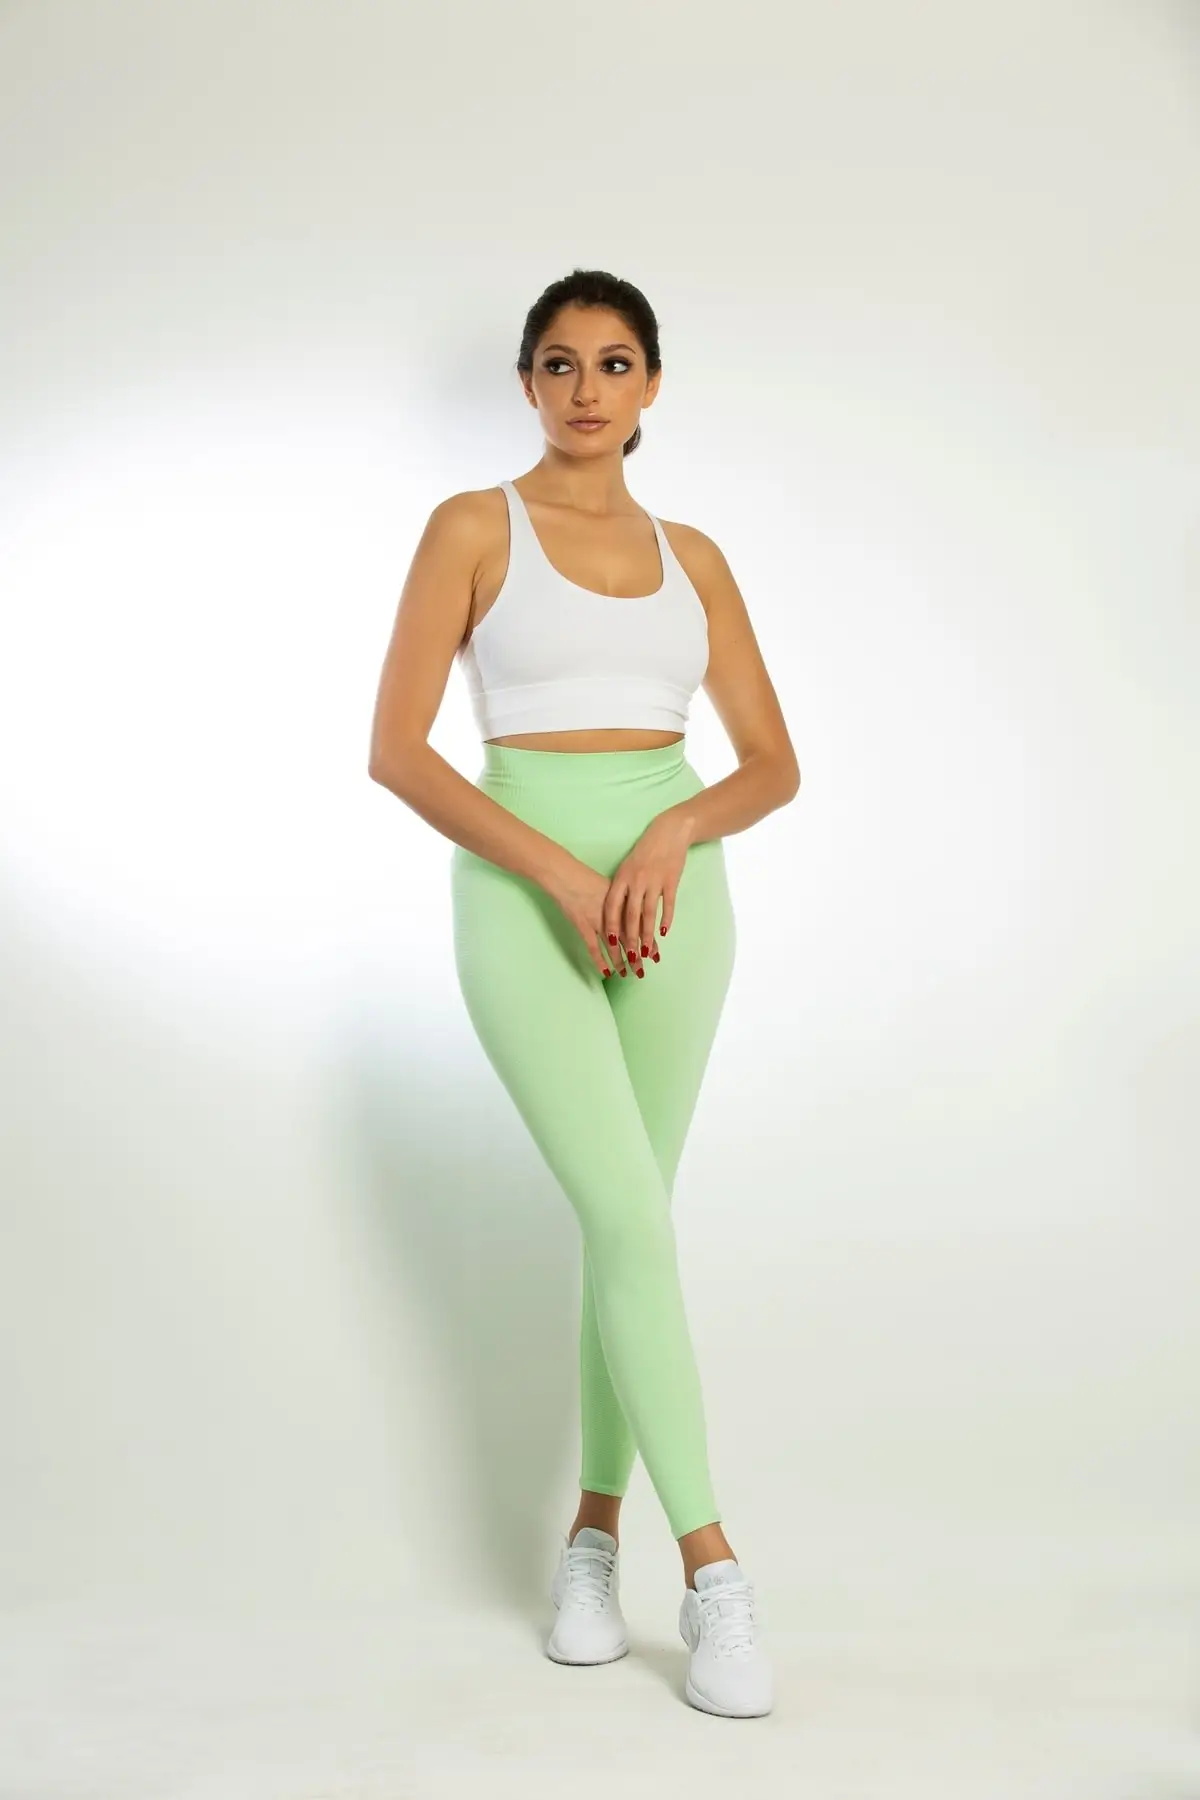 Stretch c. Ретро одежда для женщин 90 салатовые легинсы. С чем носить зеленые леггинсы. Stretch r.